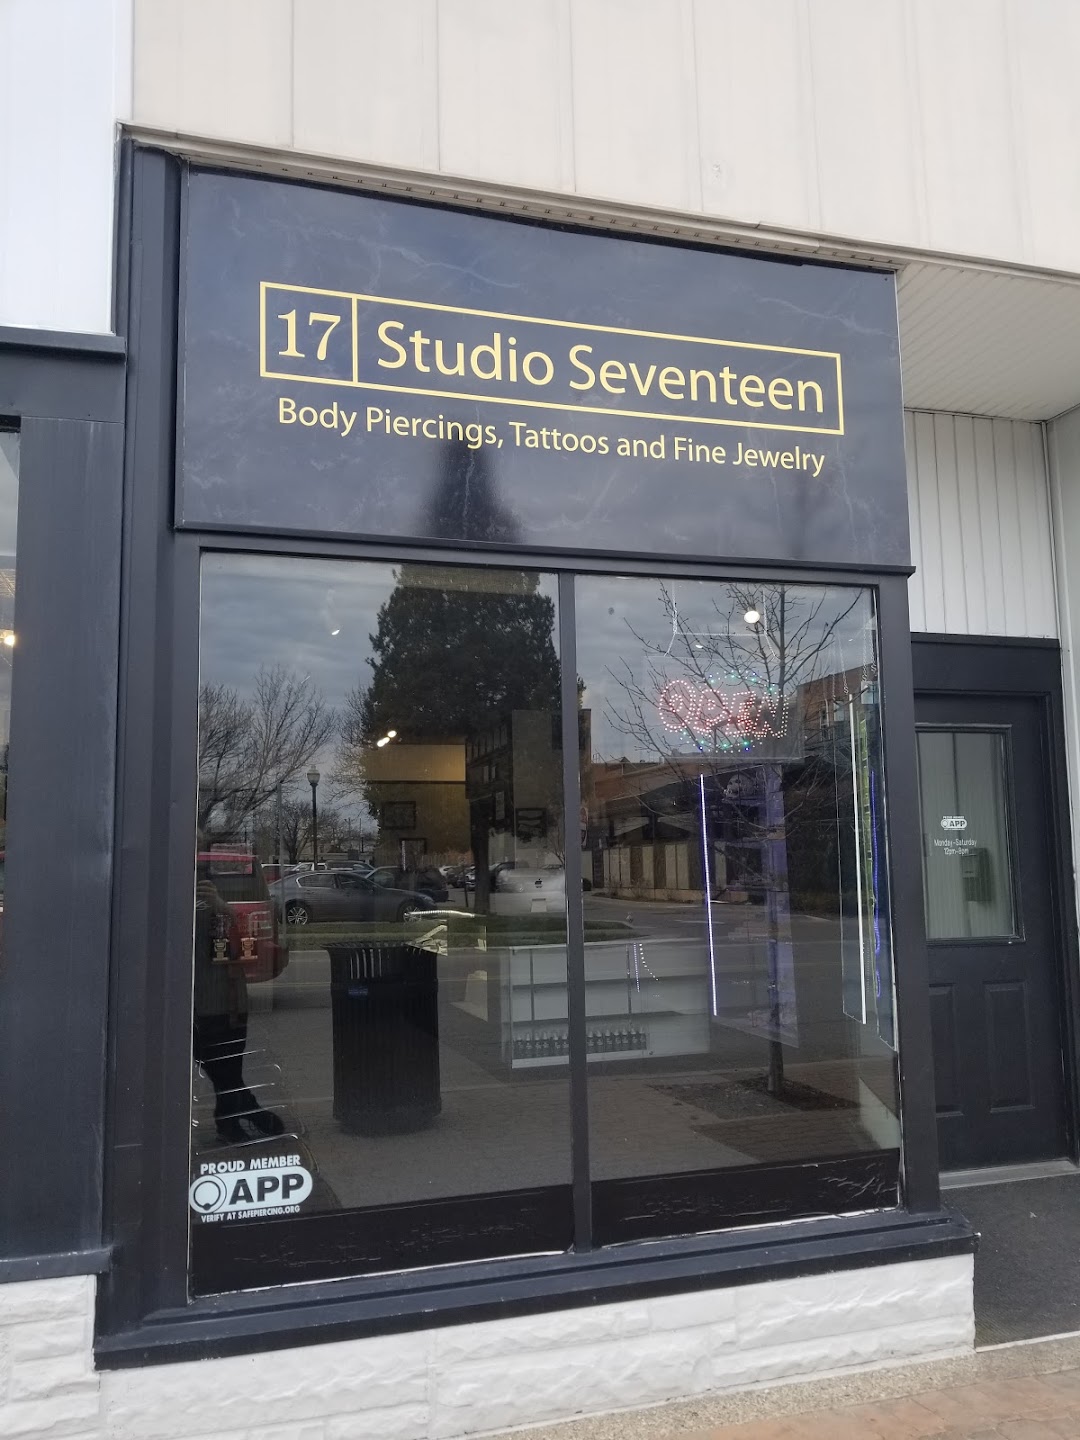 Studio Seventeen